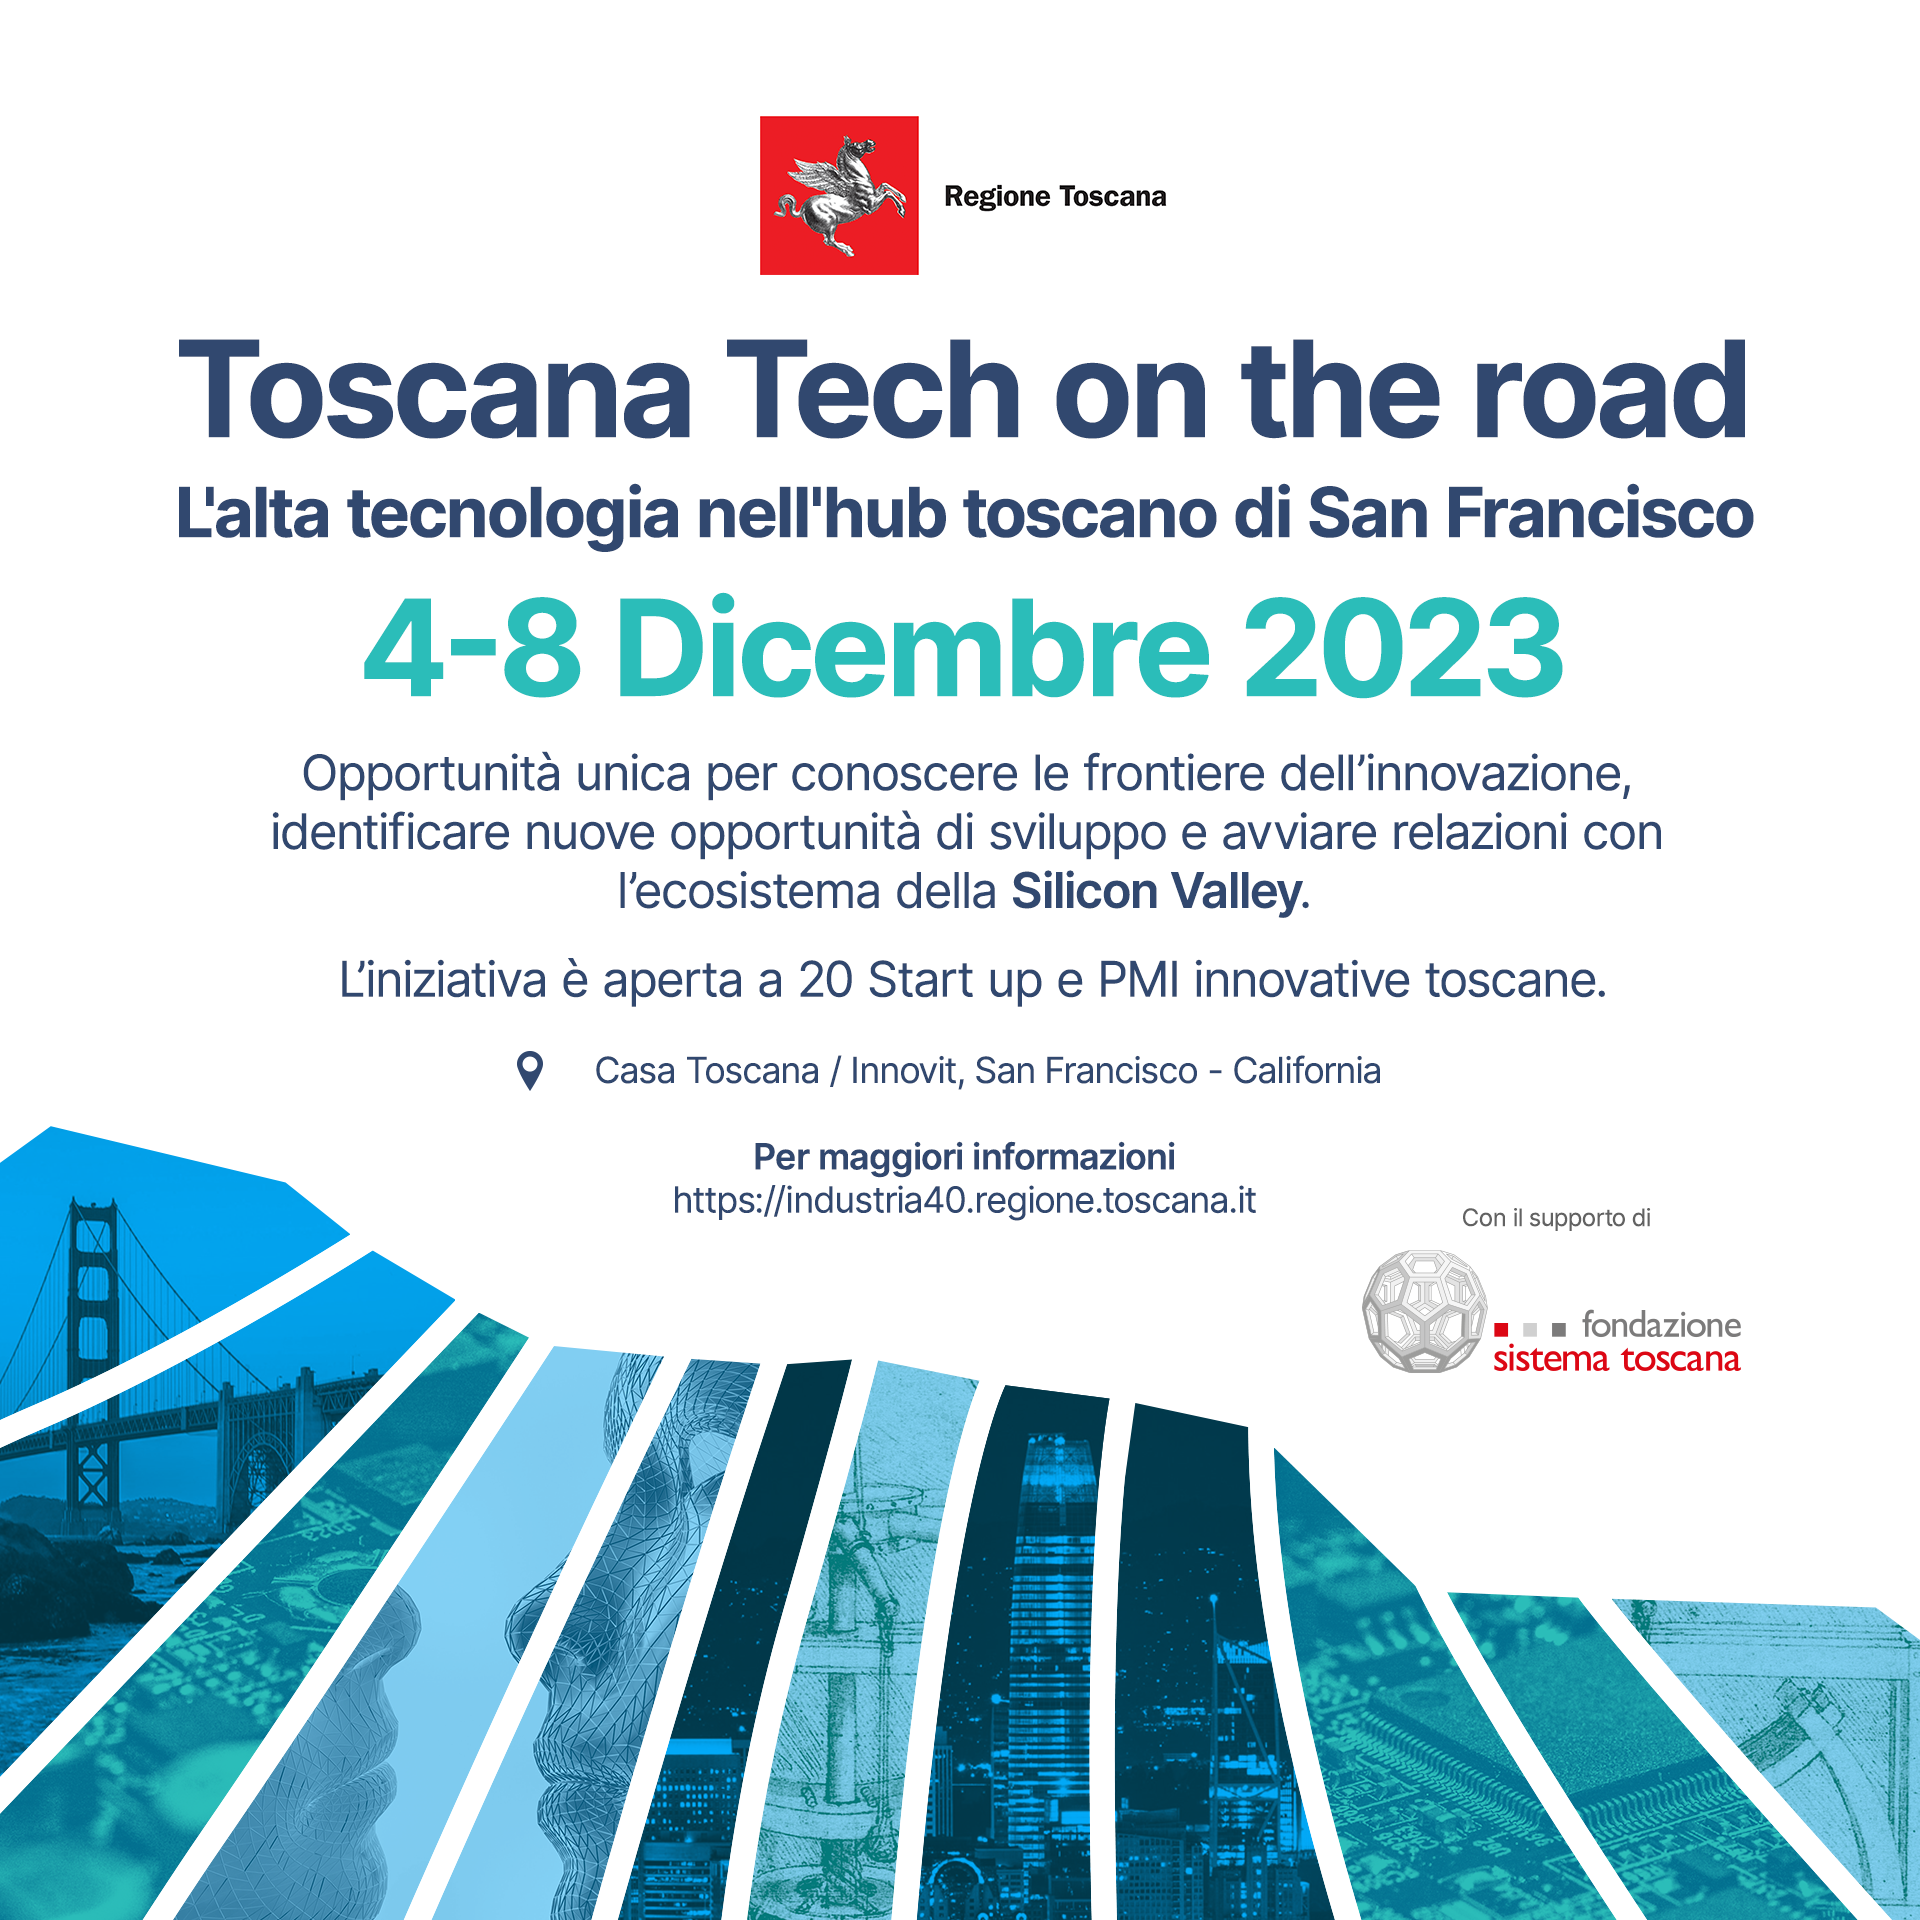 Imprese e innovazione: a San Francisco ‘Casa Toscana’ lancia le prime start-up